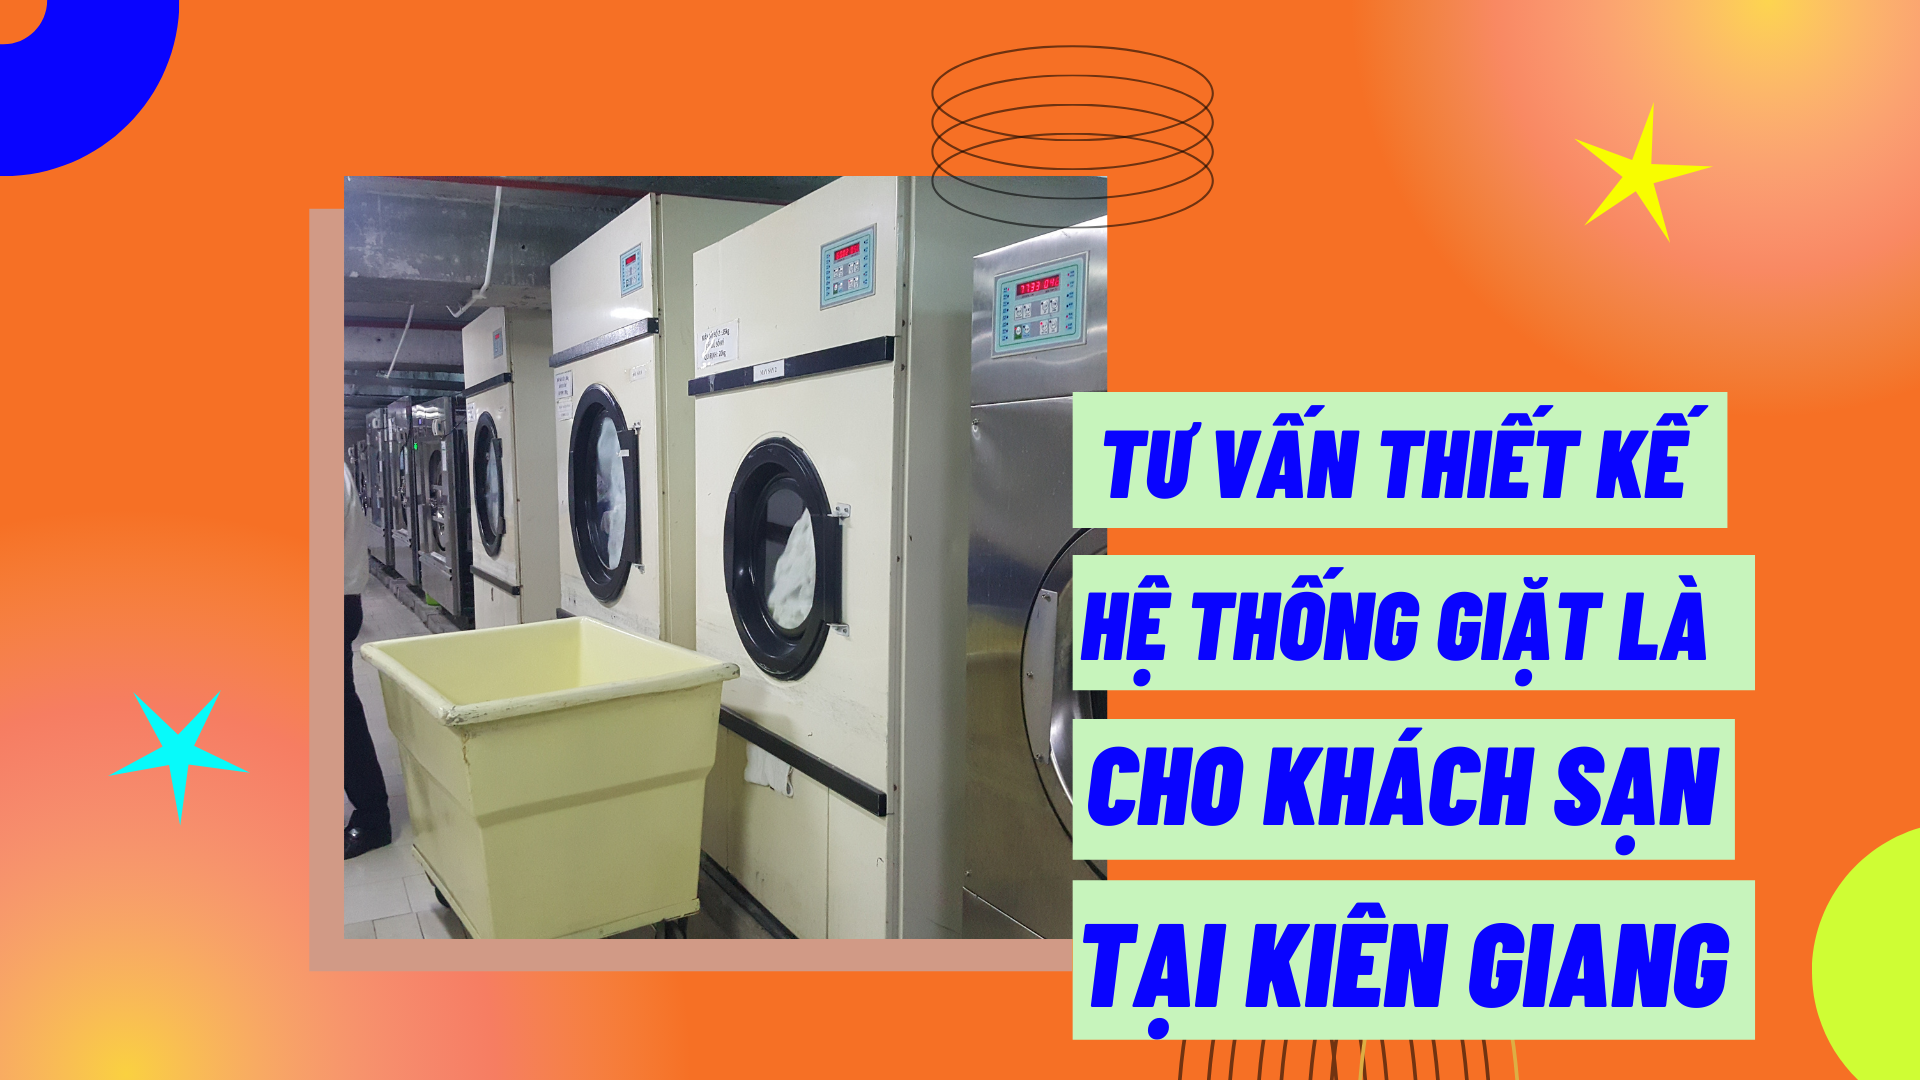 Tư vấn thiết kế hệ thống giặt là cho khách sạn tại Kiên Giang